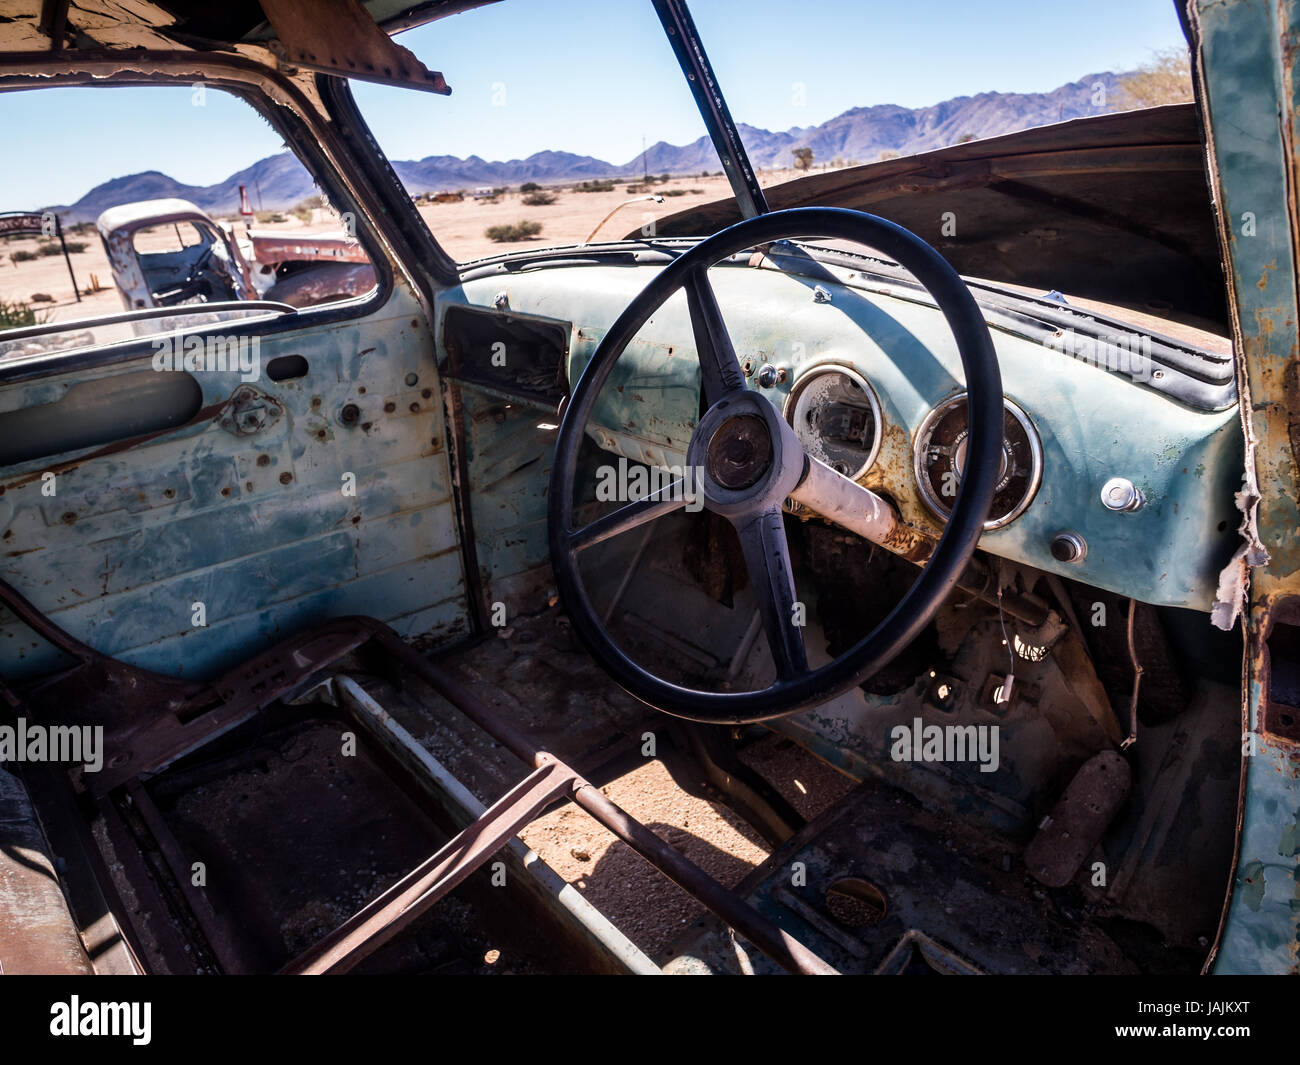 SOLITAIRE, NAMIBIA - Giugno 18, 2016: Old Ford auto rottamata sinistra in solitario sul deserto del Namib, Namibia. Foto Stock